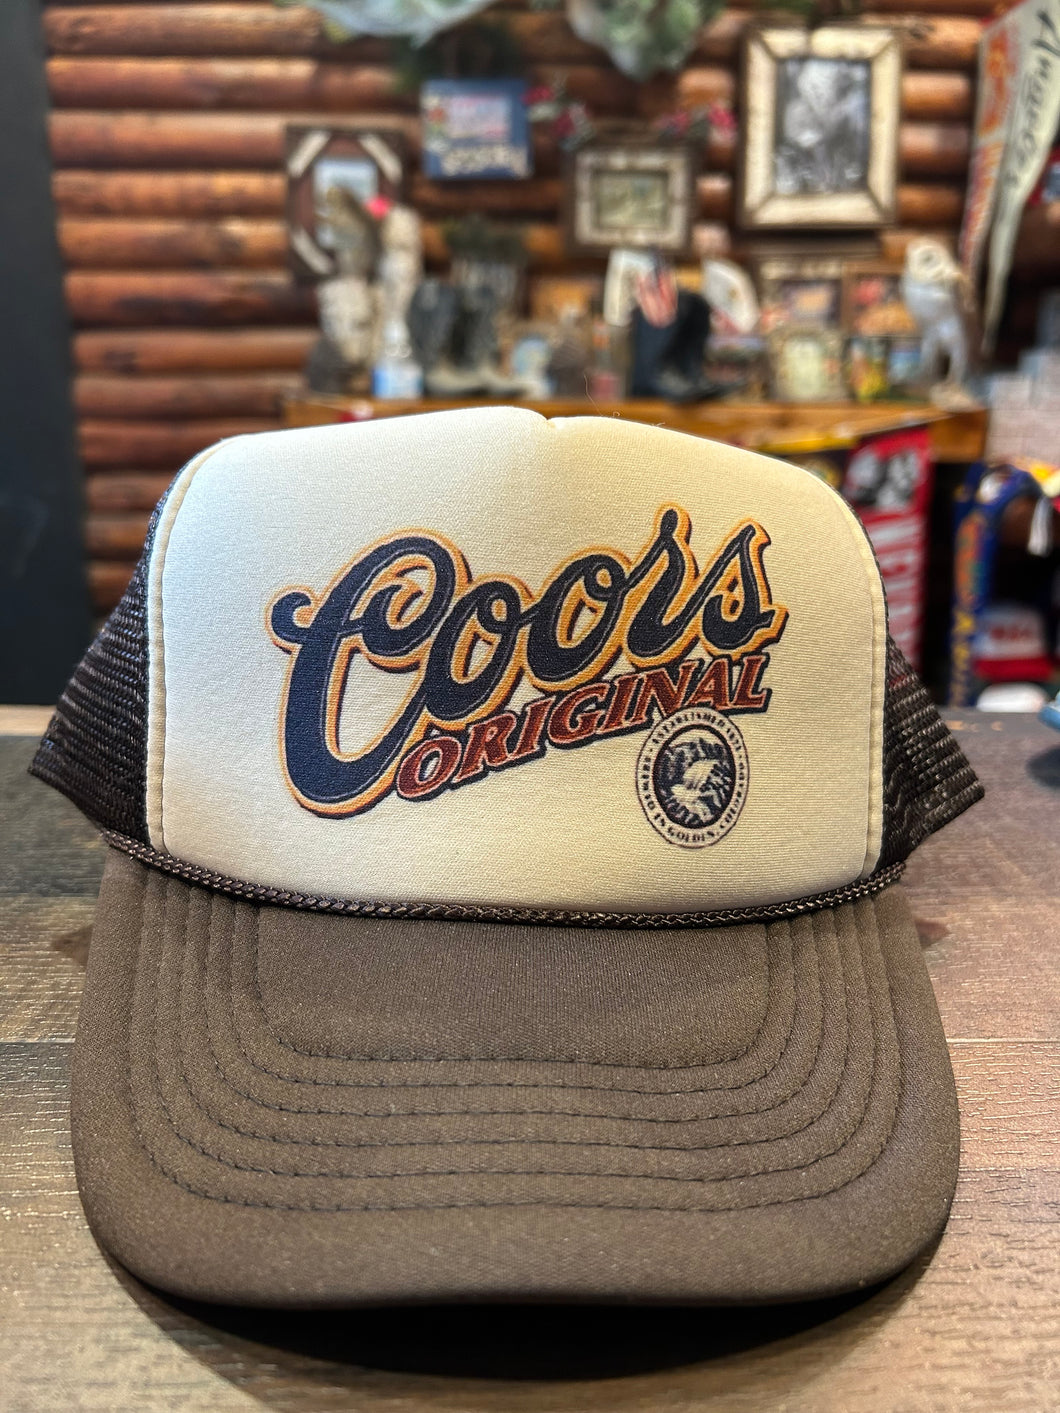 New Coors Original Tan & Brown Hat